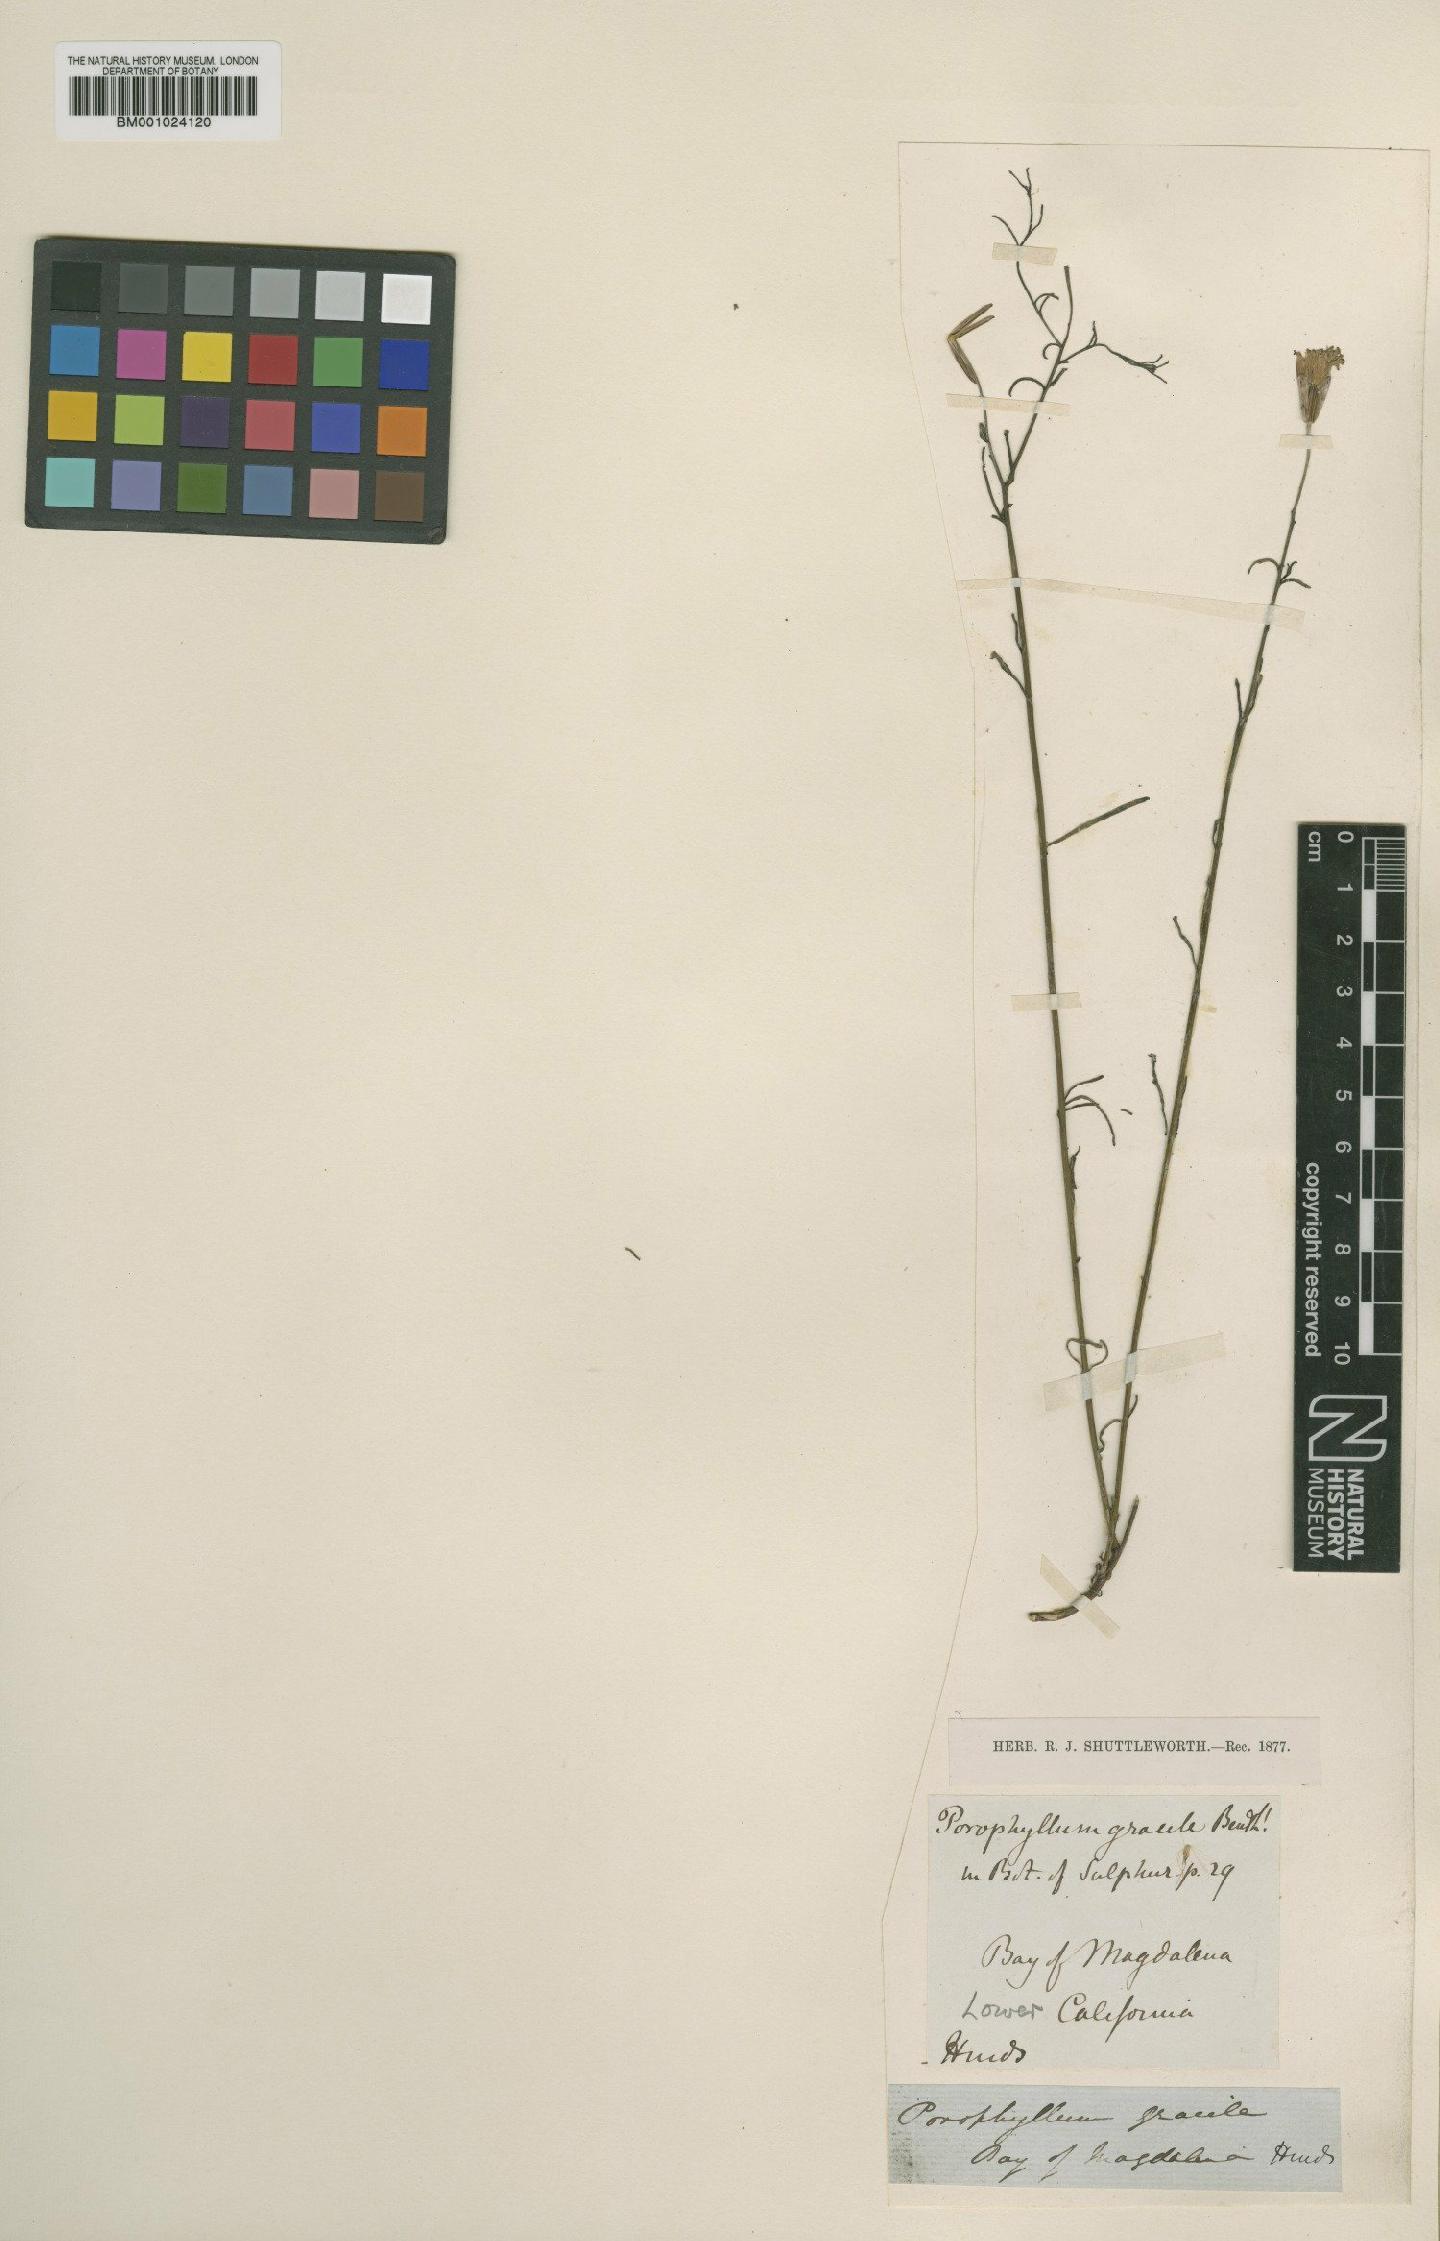 To NHMUK collection (Porophyllum gracile Benth.; Type; NHMUK:ecatalogue:622874)